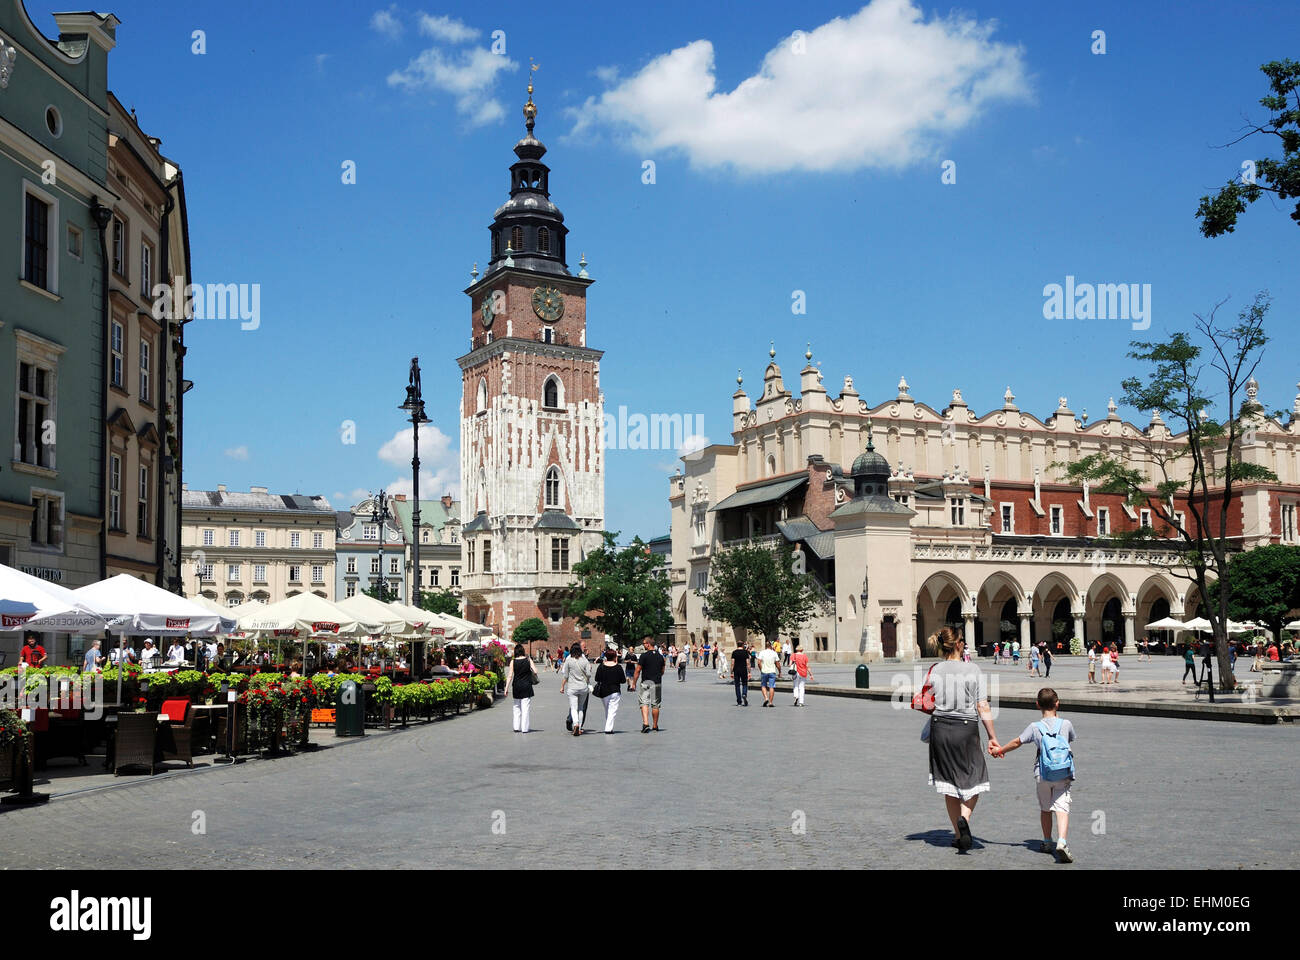 La place principale de Cracovie en Pologne avec tour de ville et de l'Étoffe Halls. Banque D'Images